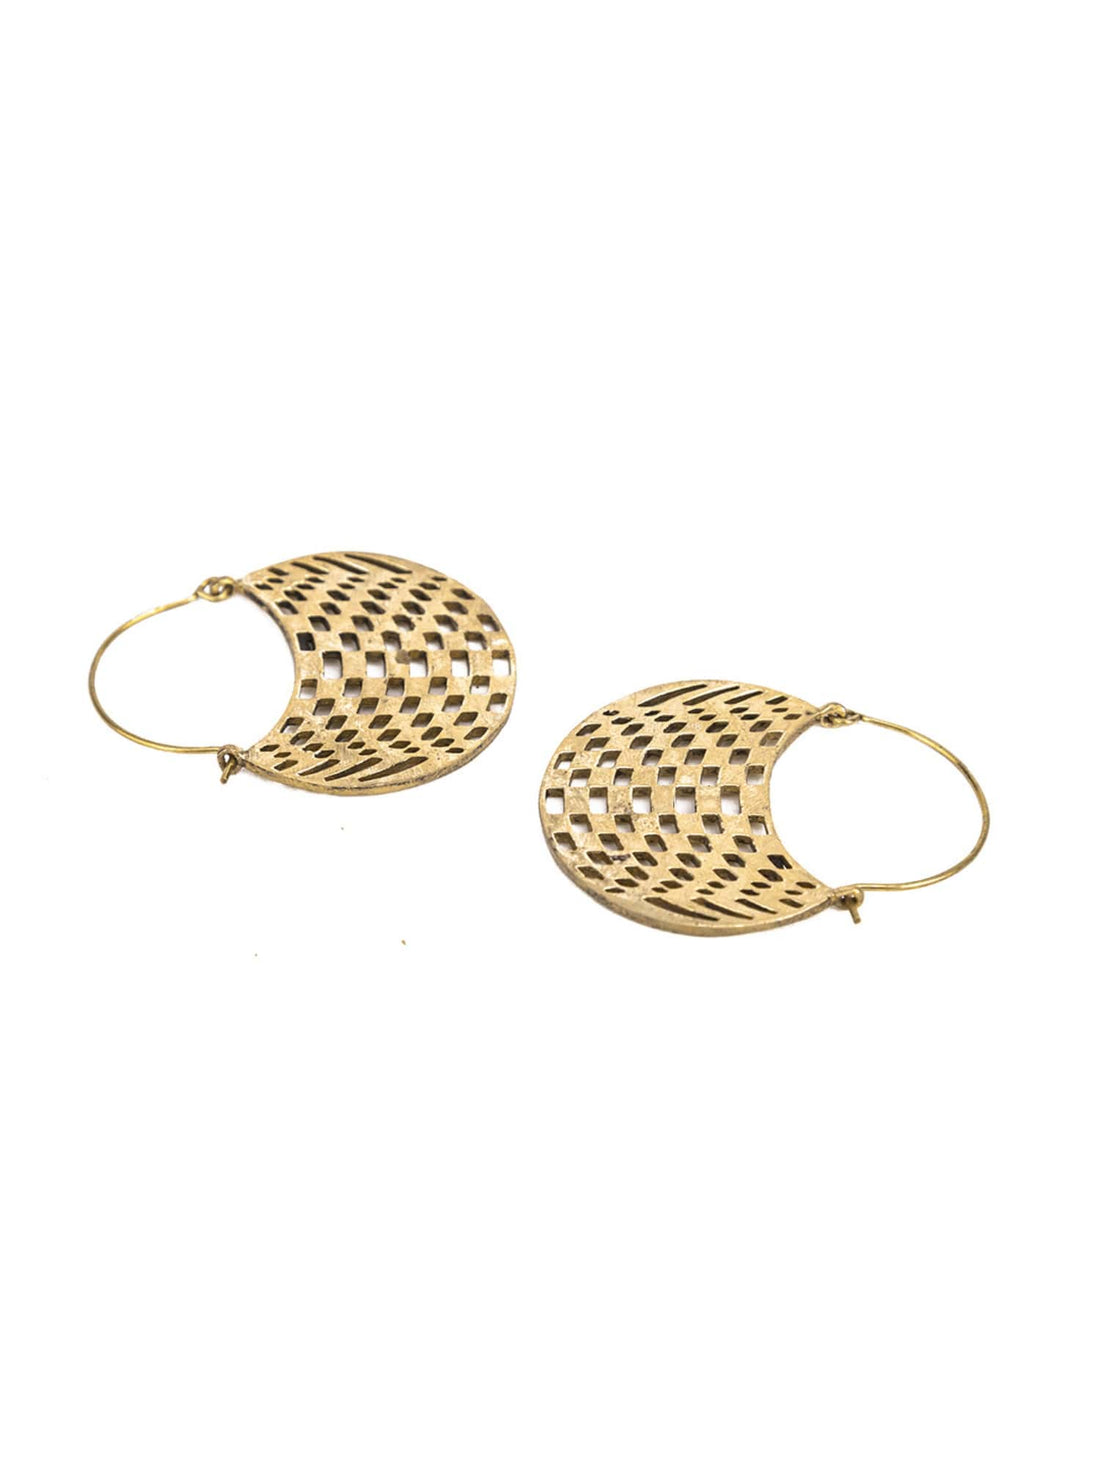 Festive Wear Chandbaalis Earrings - Minimal Gold and Silver-Plated Brass Earrings By Studio One Love